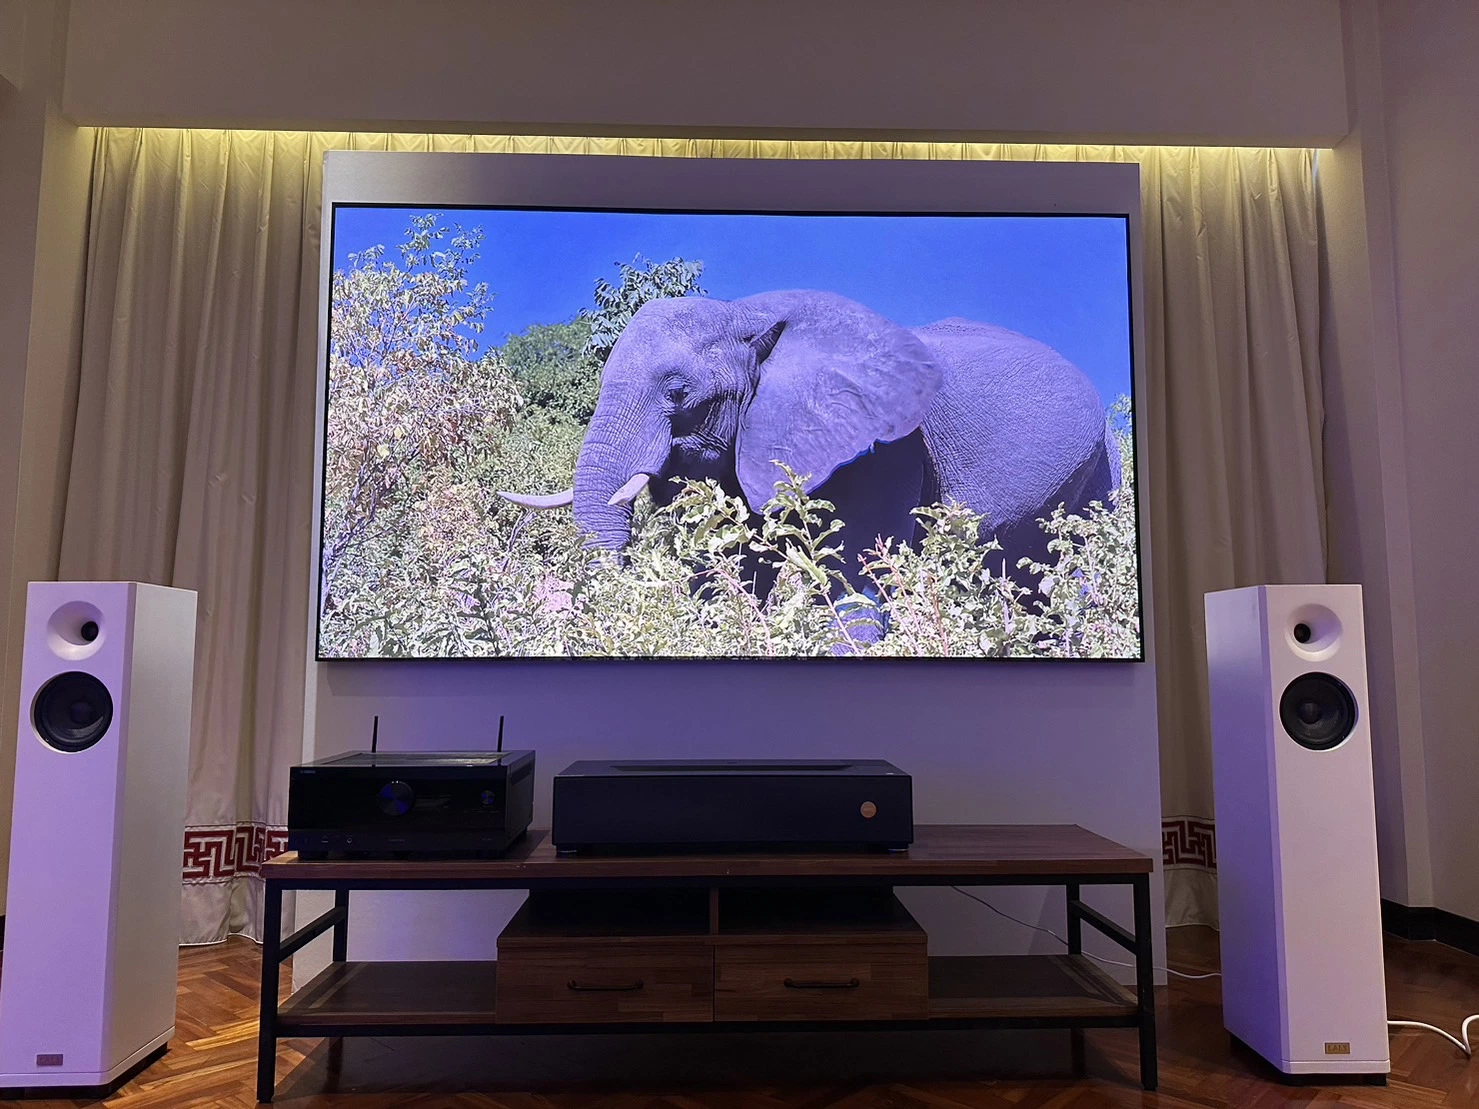 Fscreen 120 polegadas Aura Series Fresnel ALR rejeição de luz ambiente Ecrã de projecção para televisores a laser de projecção ultra curta Home Cinema em casa de cinema em casa